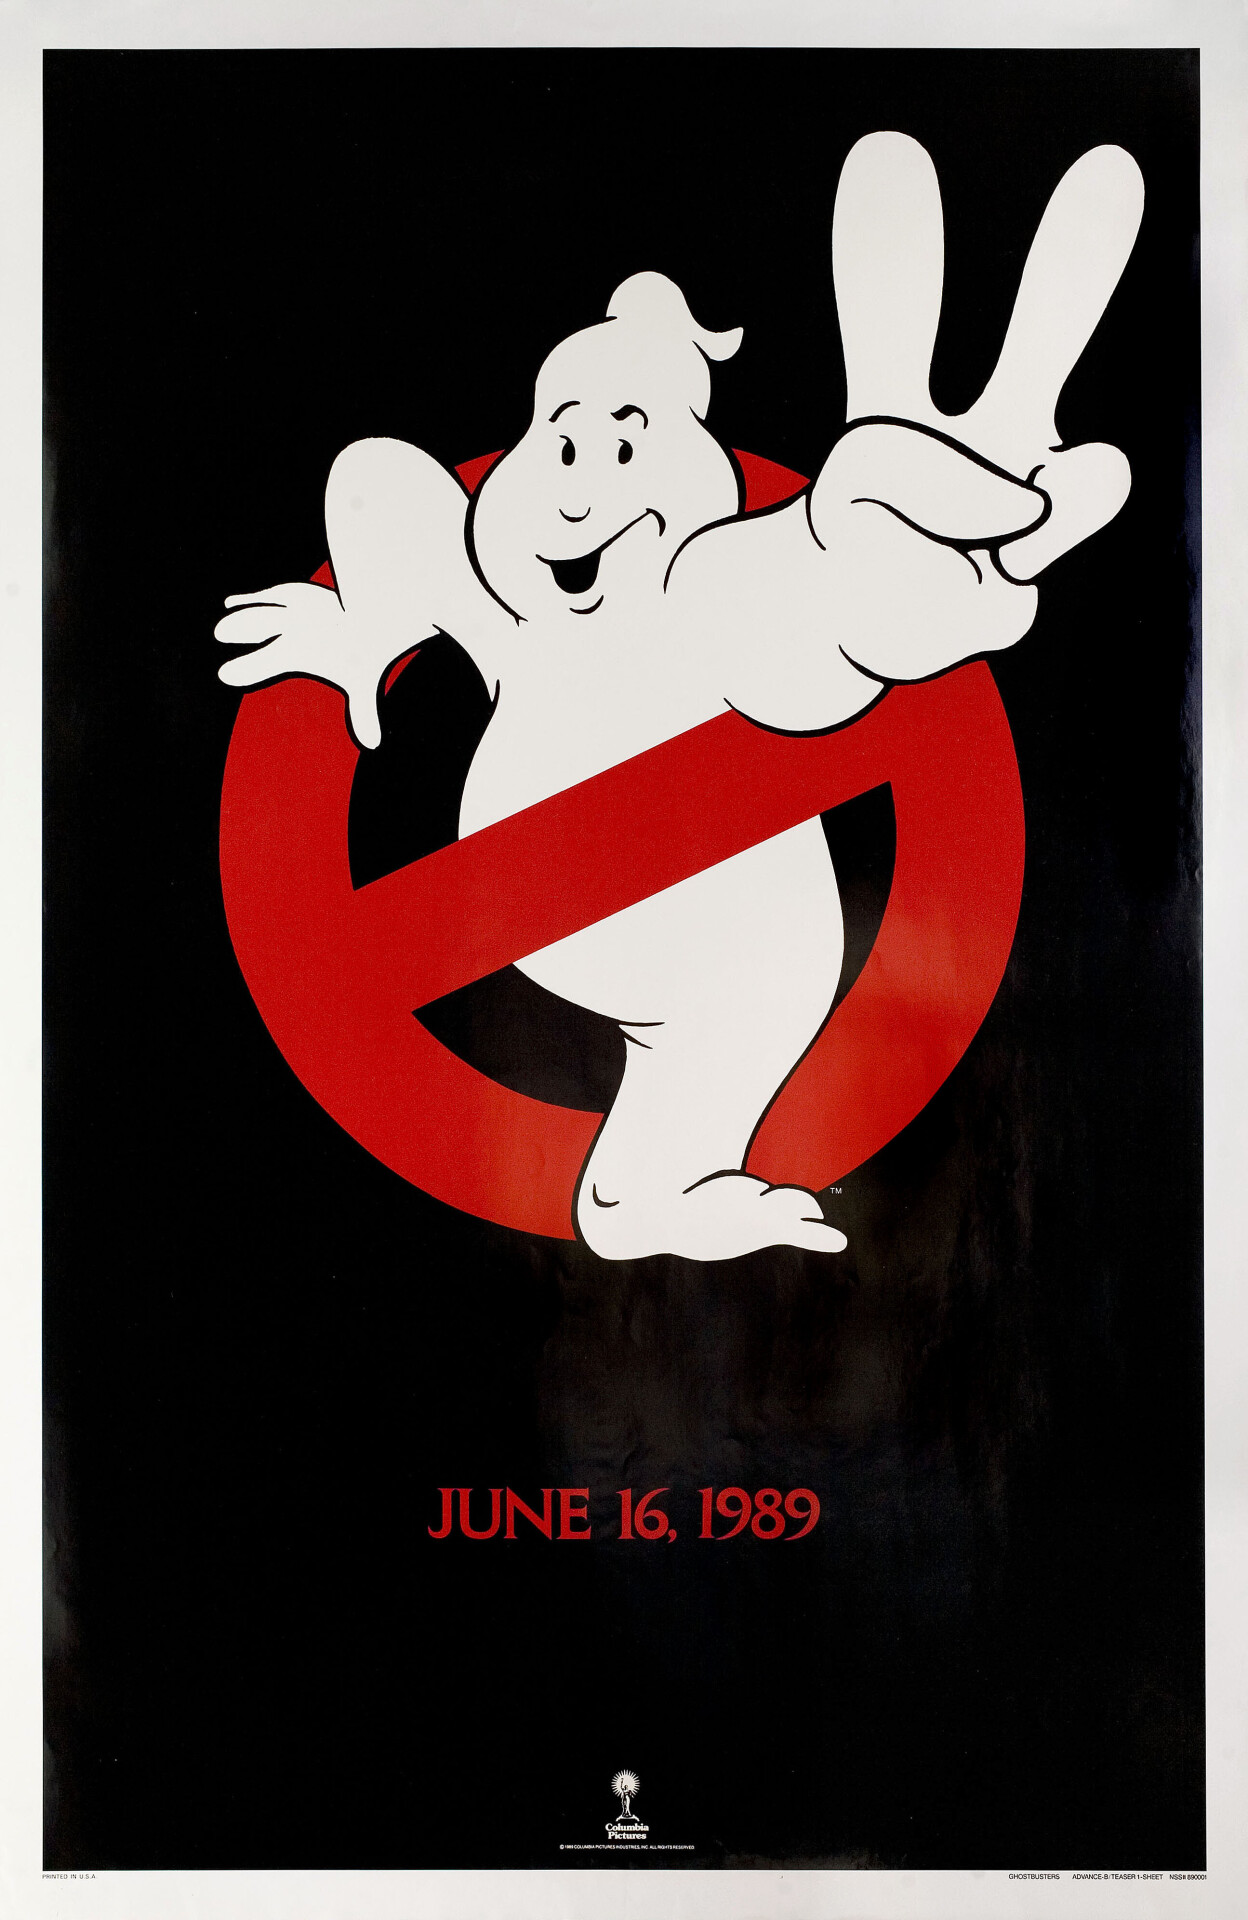 Охотники за привидениями 2 (Ghostbusters II, 1989), режиссёр Иван Рейтман, минималистичный постер к фильму (США, 1988 год)